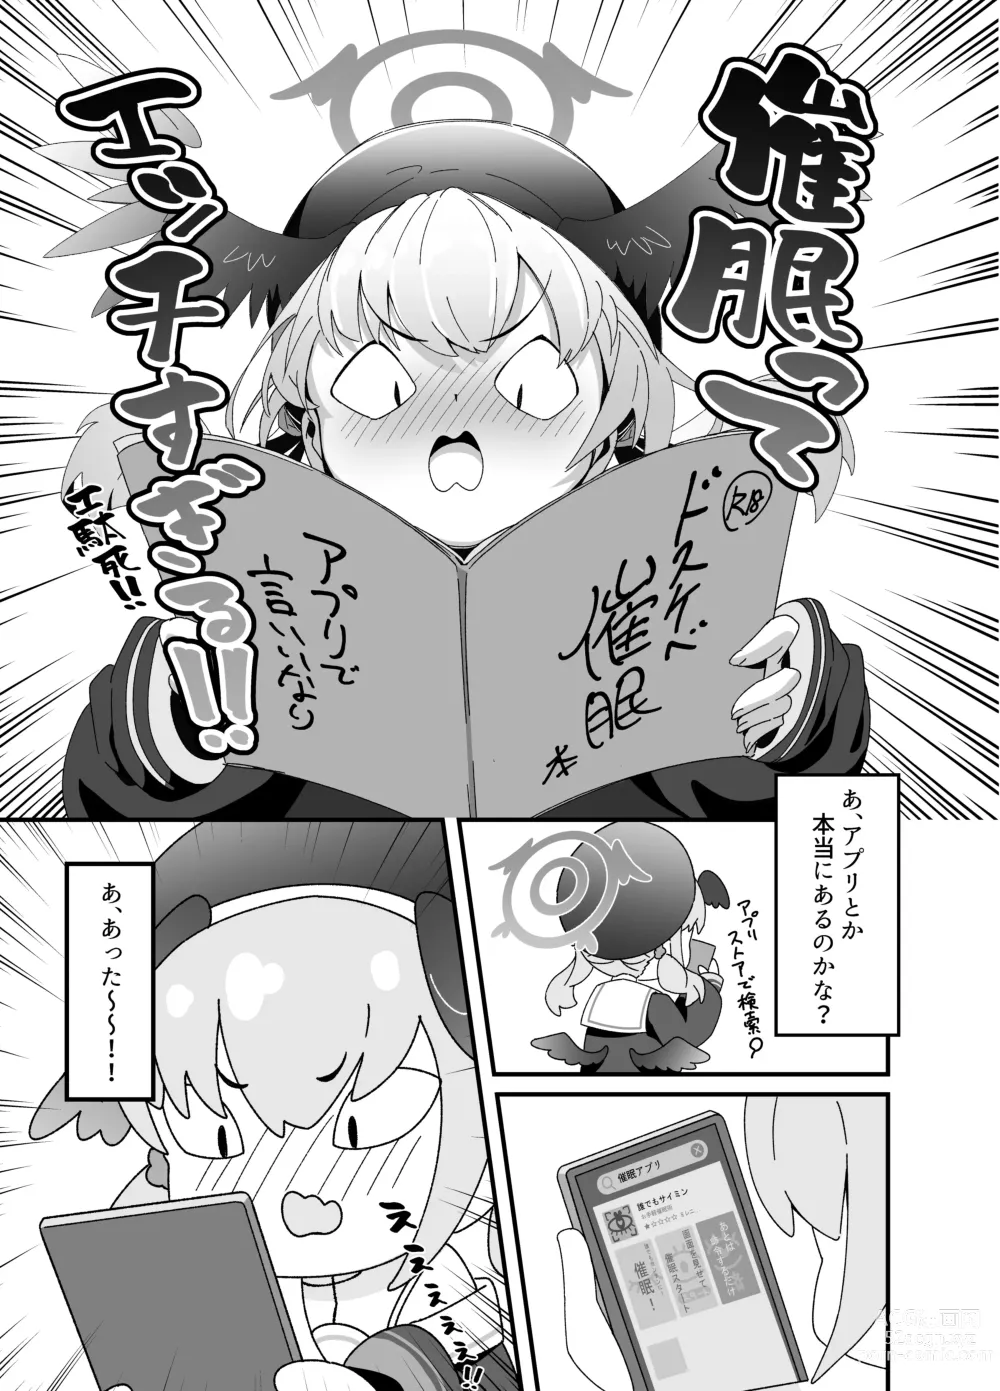 Page 3 of doujinshi Anna Koto ya Konna Koto mo Watashi no Omou ga Mama!?